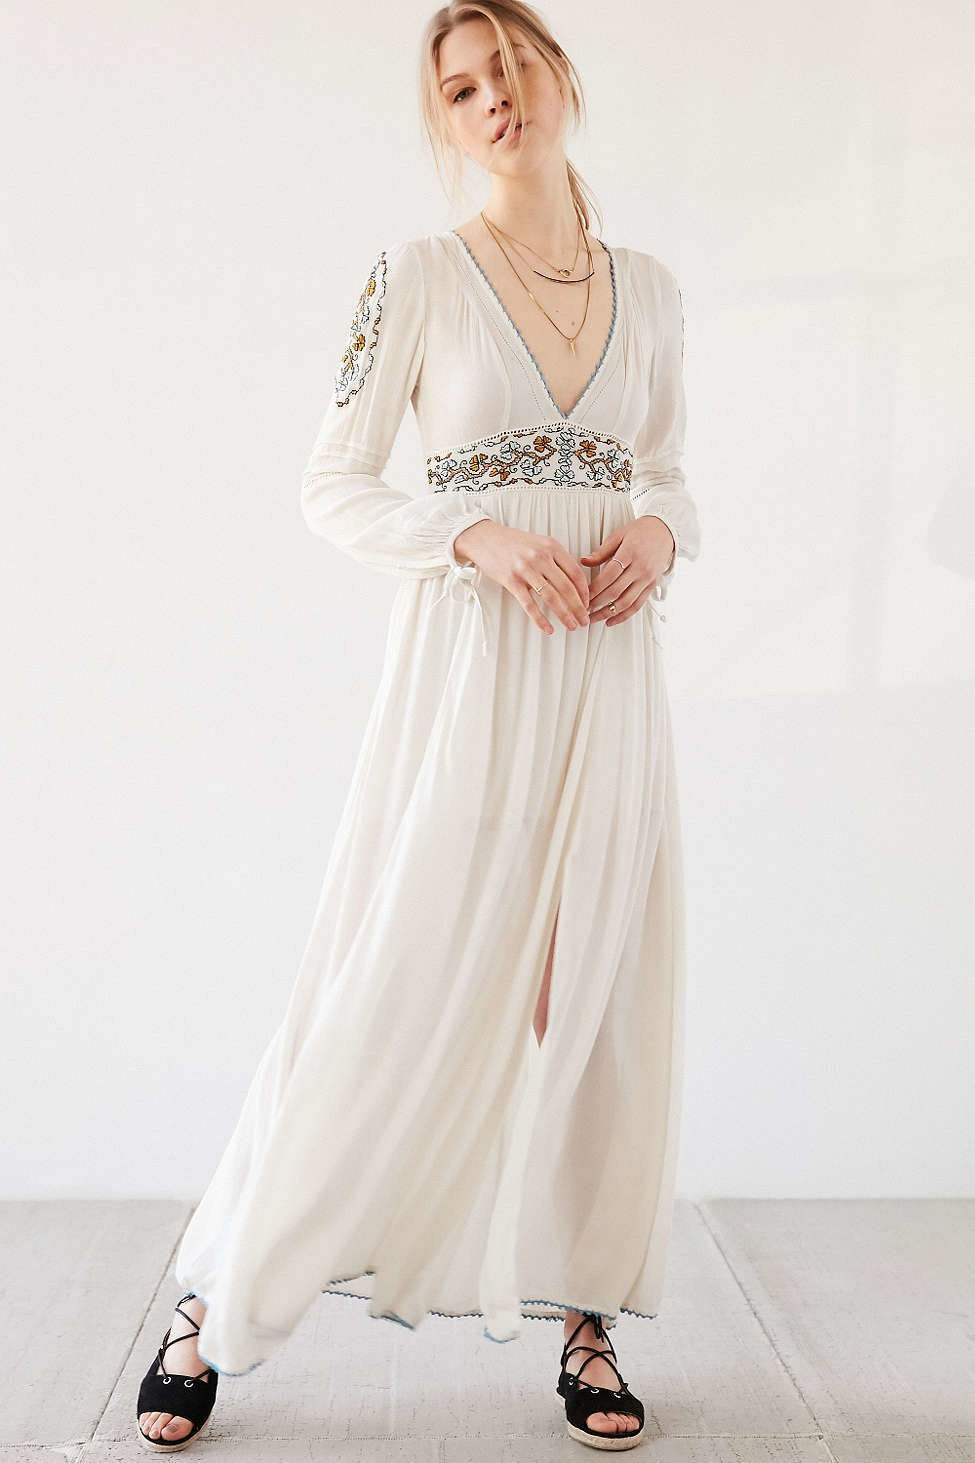 التي لا نهاية لها Rose Embroidered Dress, $77, [shopbop.com](https://www.shopbop.com/embroidered-dress-endless-rose/vp/v=1/1515460787.htm?fm=search-shopbysize&os=false)